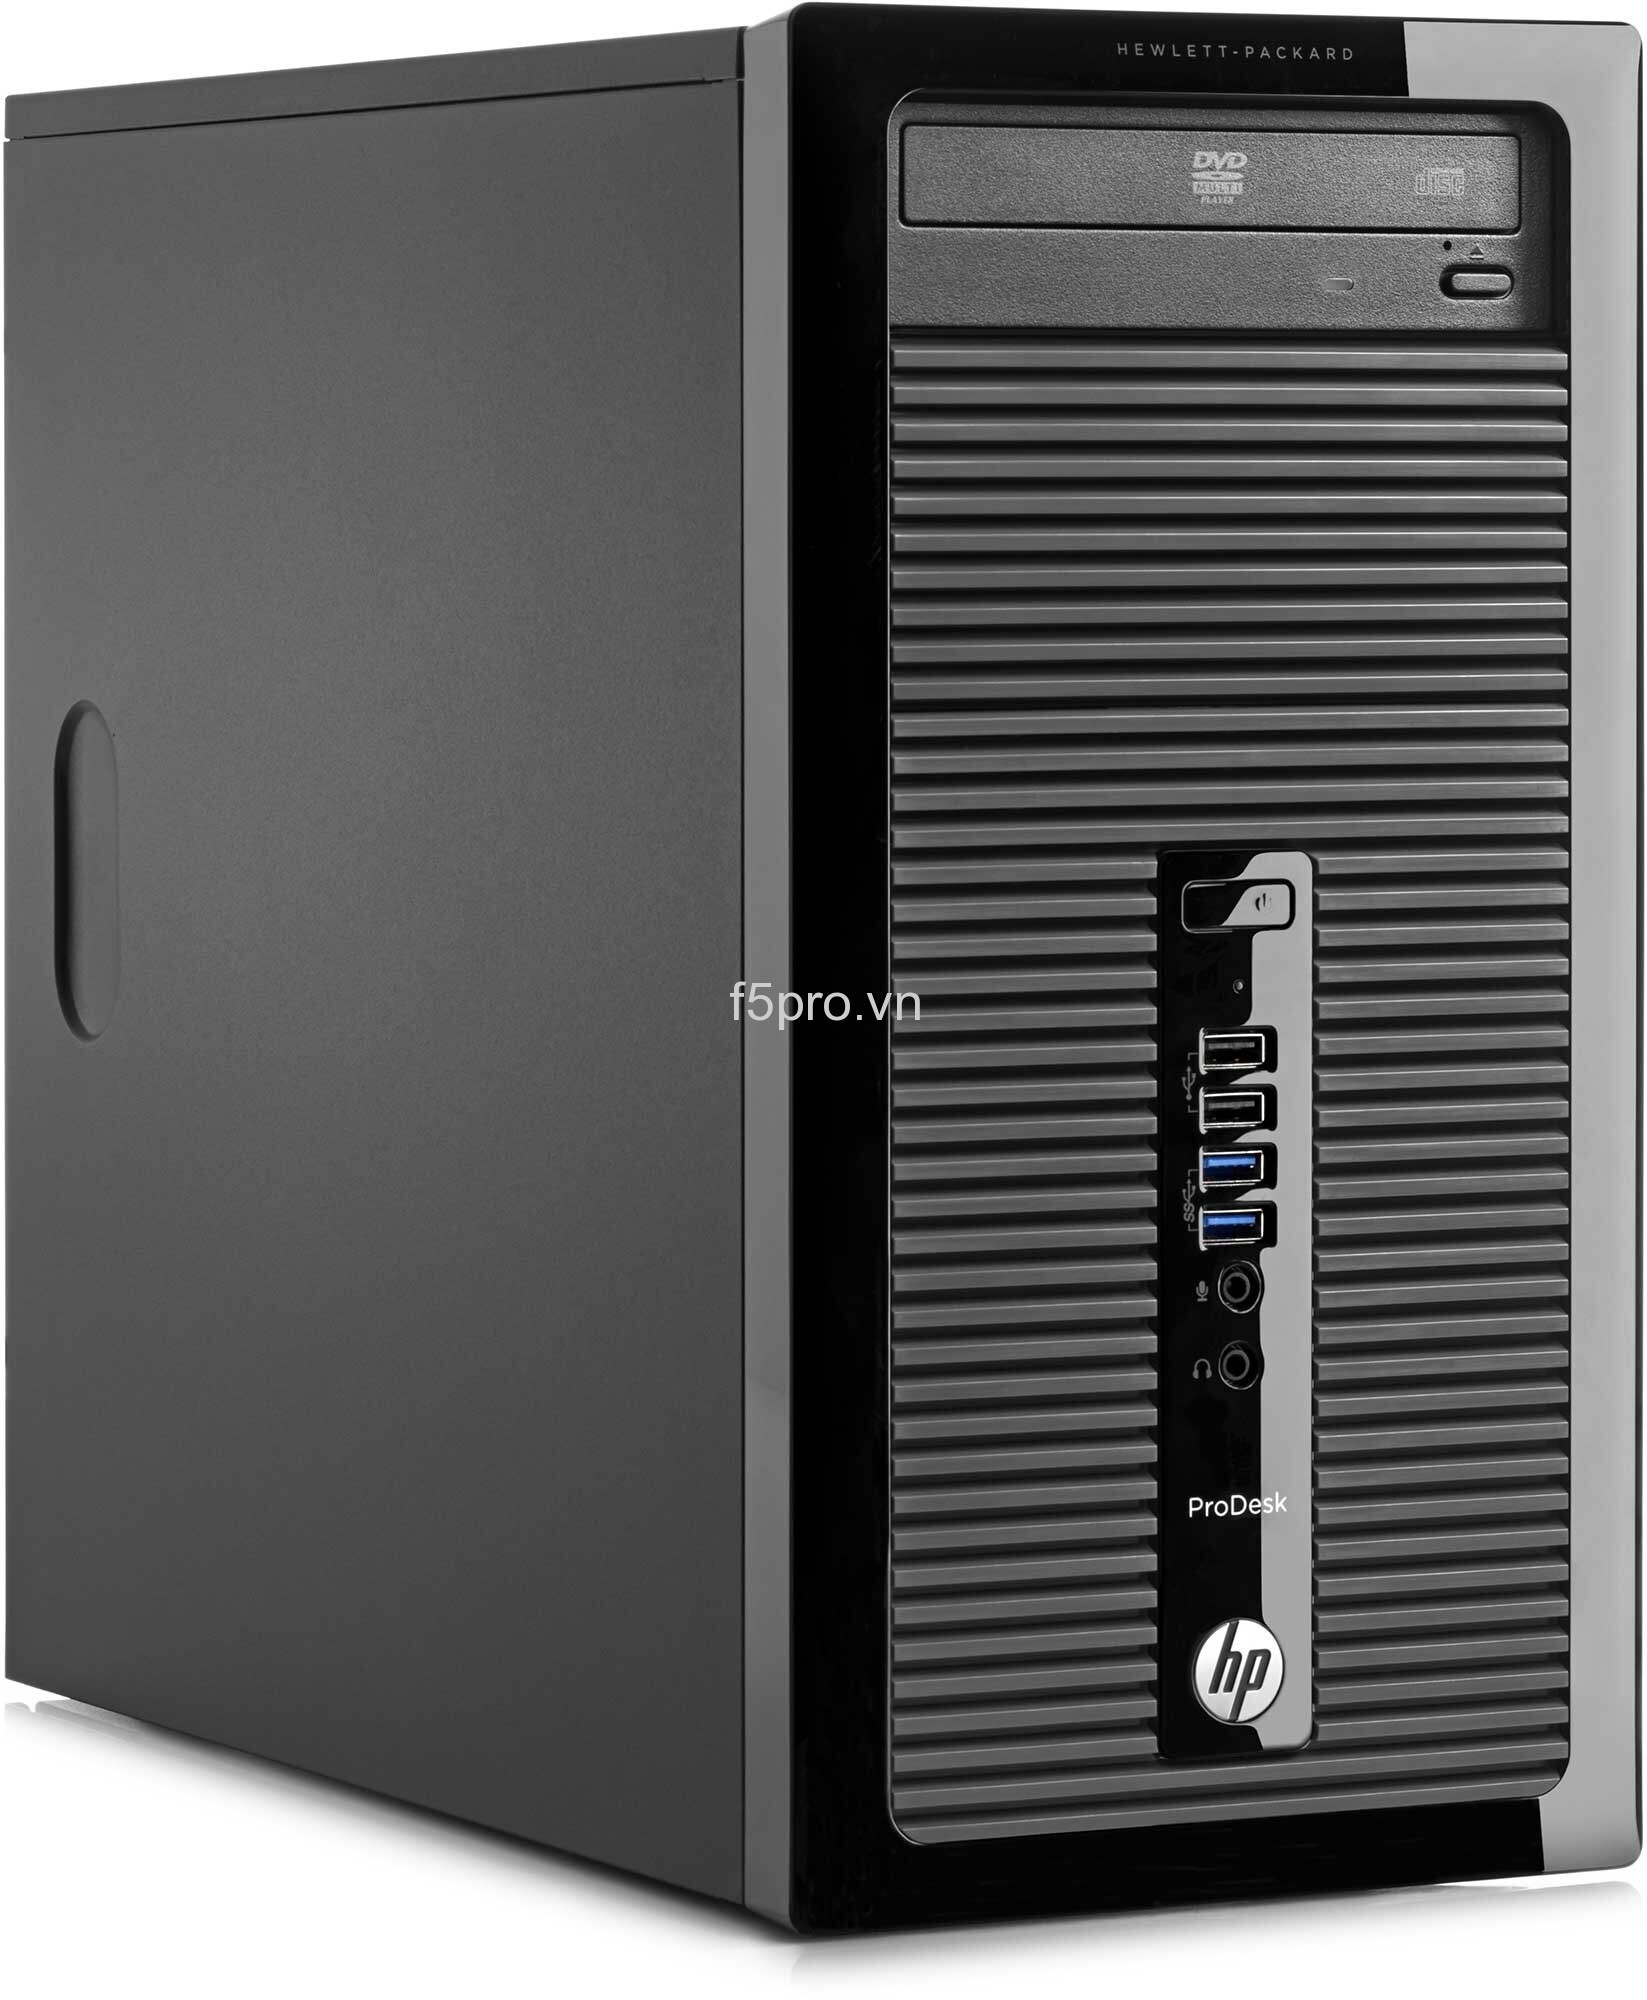 Máy tính để bàn HP ProDesk 400 G2 J8G29PA (4150-2-500) - Intel Core  i3-4150 3.5Ghz, 2GB RAM, 500GB HDD, Intel HD Graphics 4400